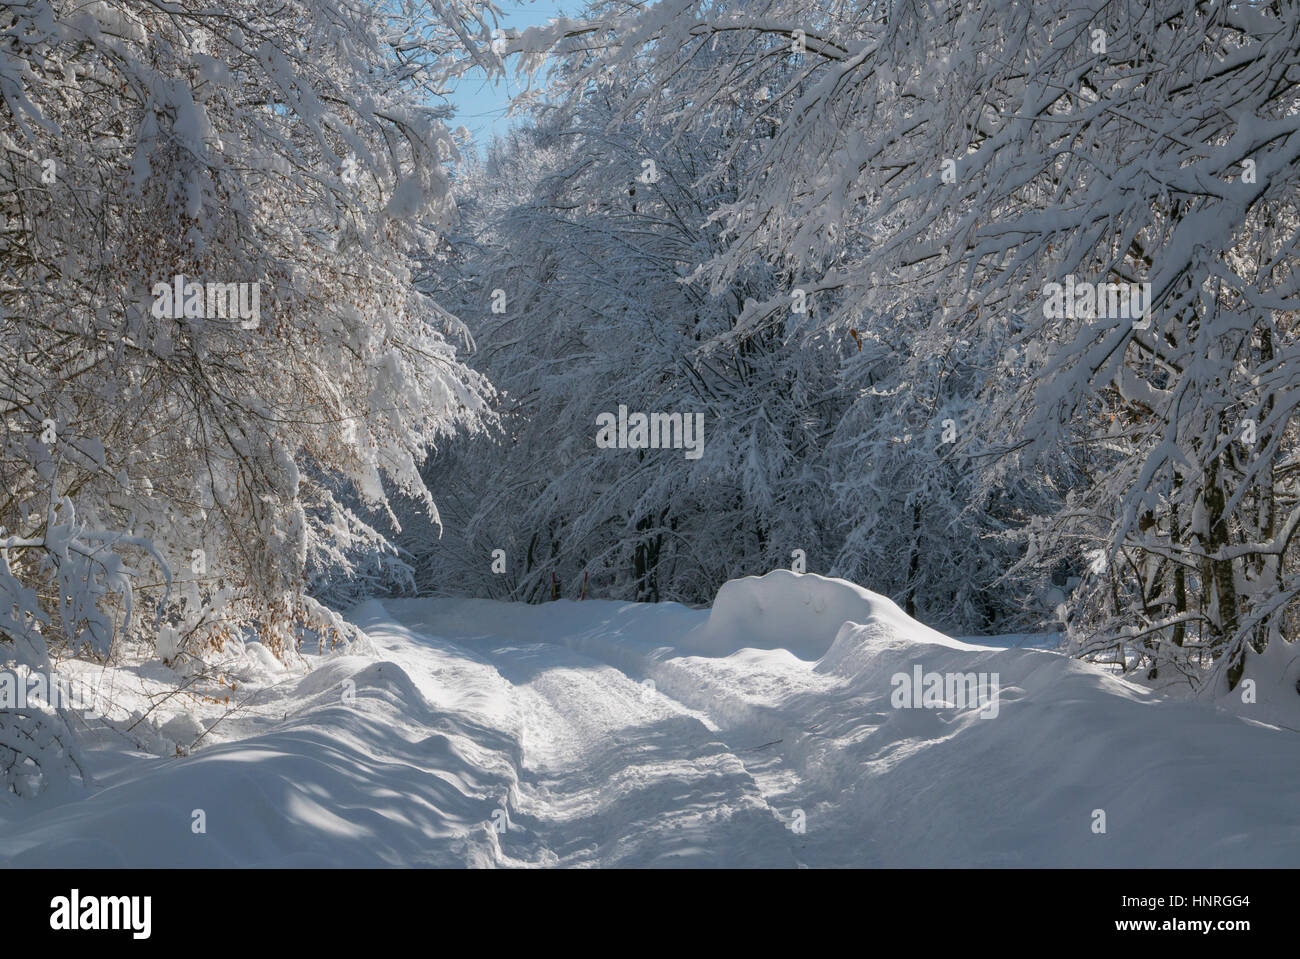 Belle neige blanche couvrant les arbres et les branches de la création d'un tunnel de neige sur un jour d'hiver ensoleillé avec ciel bleu. Banque D'Images